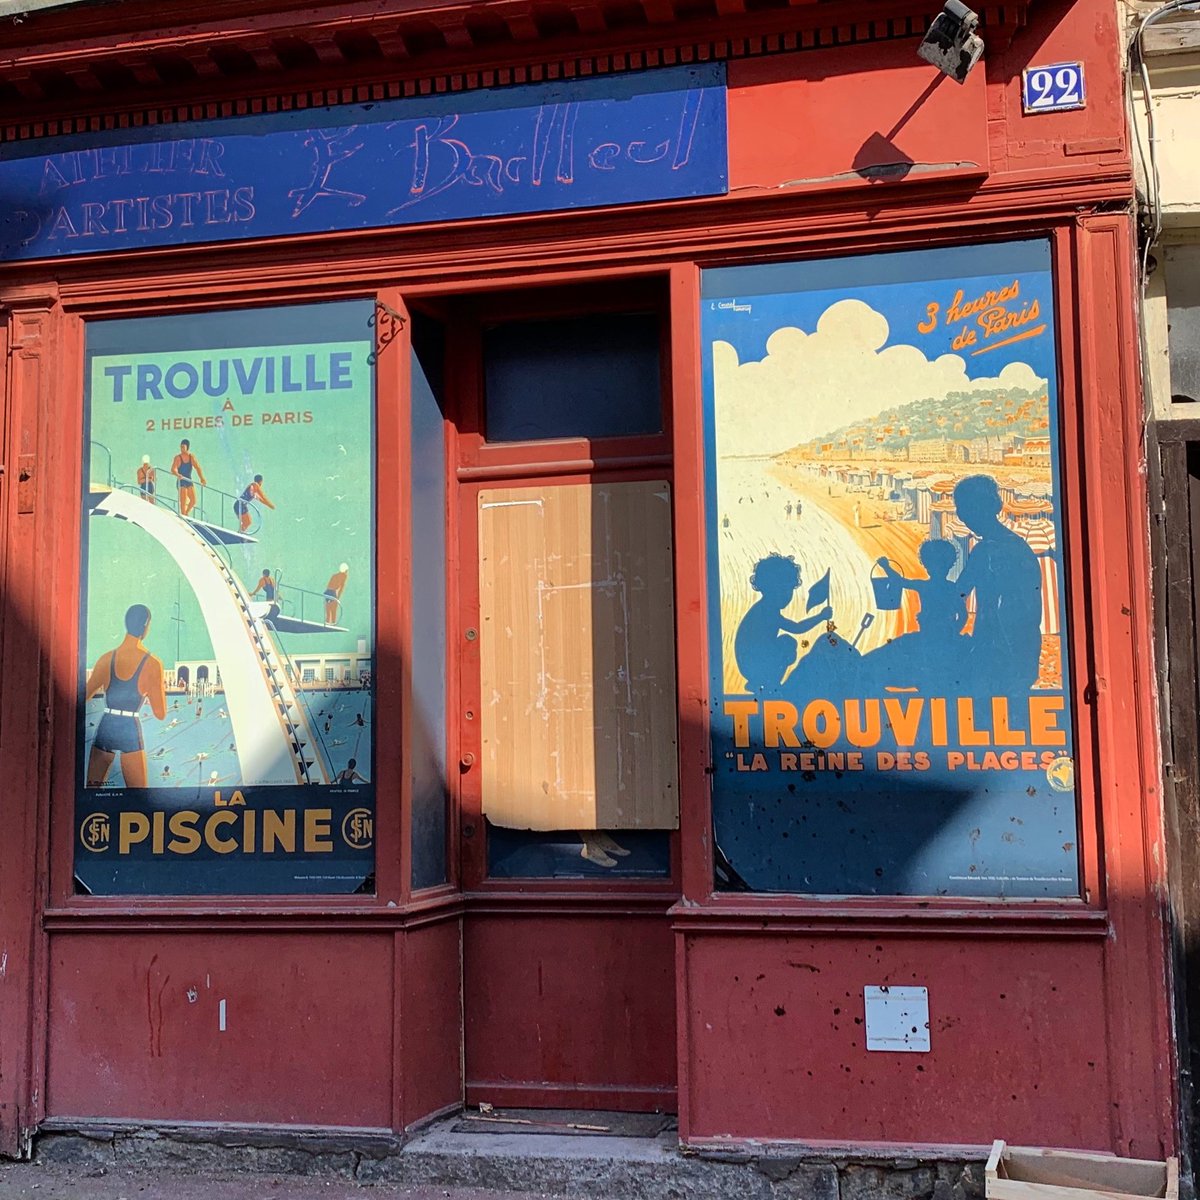 Tomber sur de vieilles affiches SNCF dans les rues de Trouville 🏖☀️🦀🚂
⁦@GroupeSNCF⁩ #patrimoinesncf